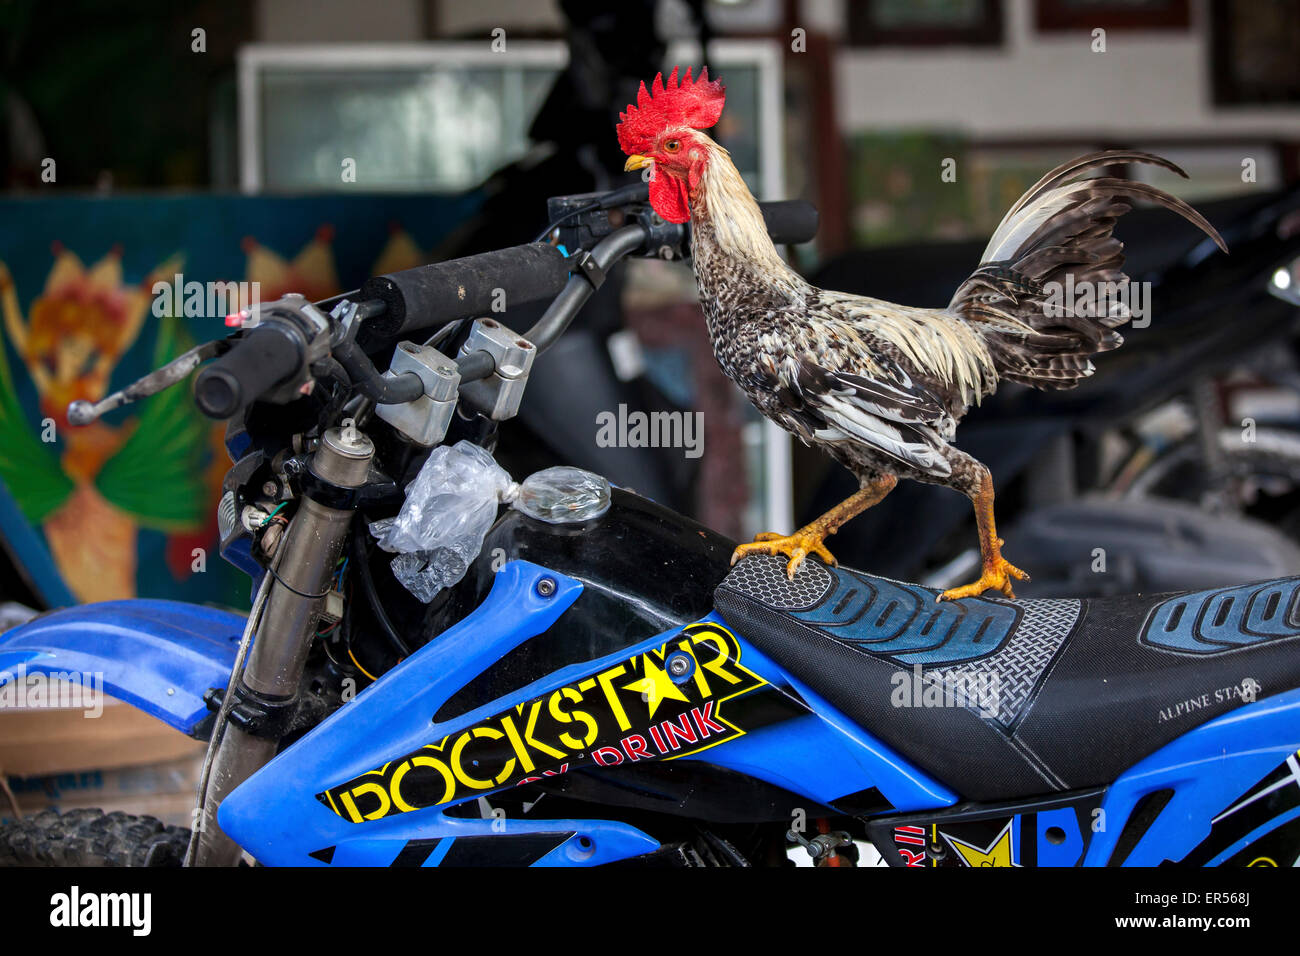 Ein Hahn steht auf einem Motorrad in Bali, Indonesien Stockfotografie -  Alamy